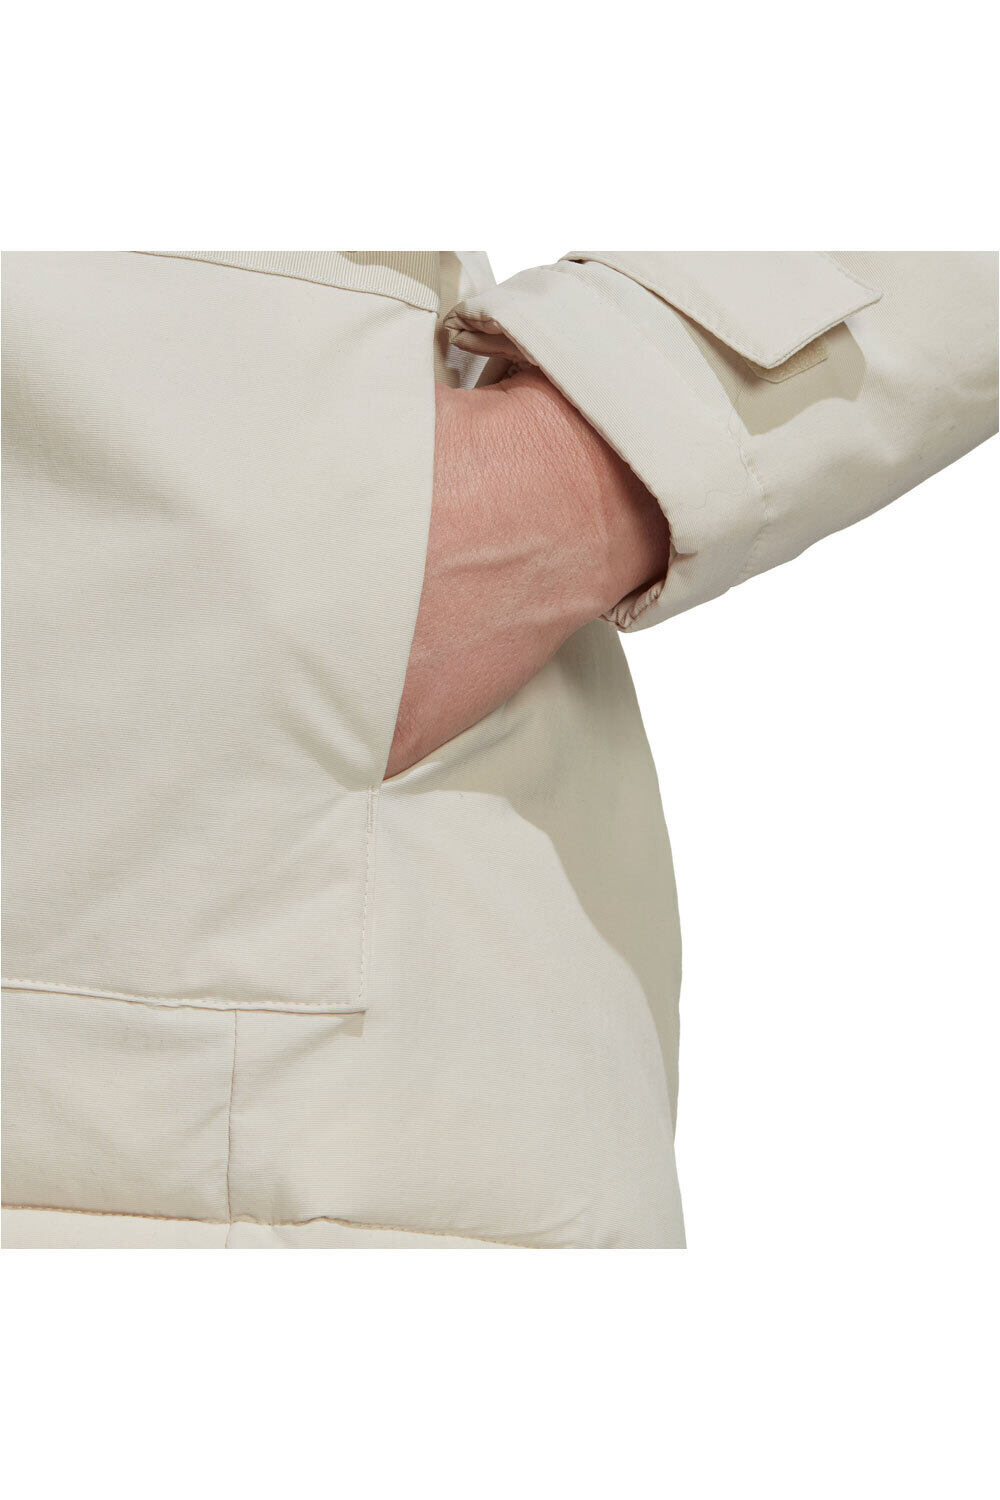 adidas chaquetas mujer Utilitas con capucha vista detalle